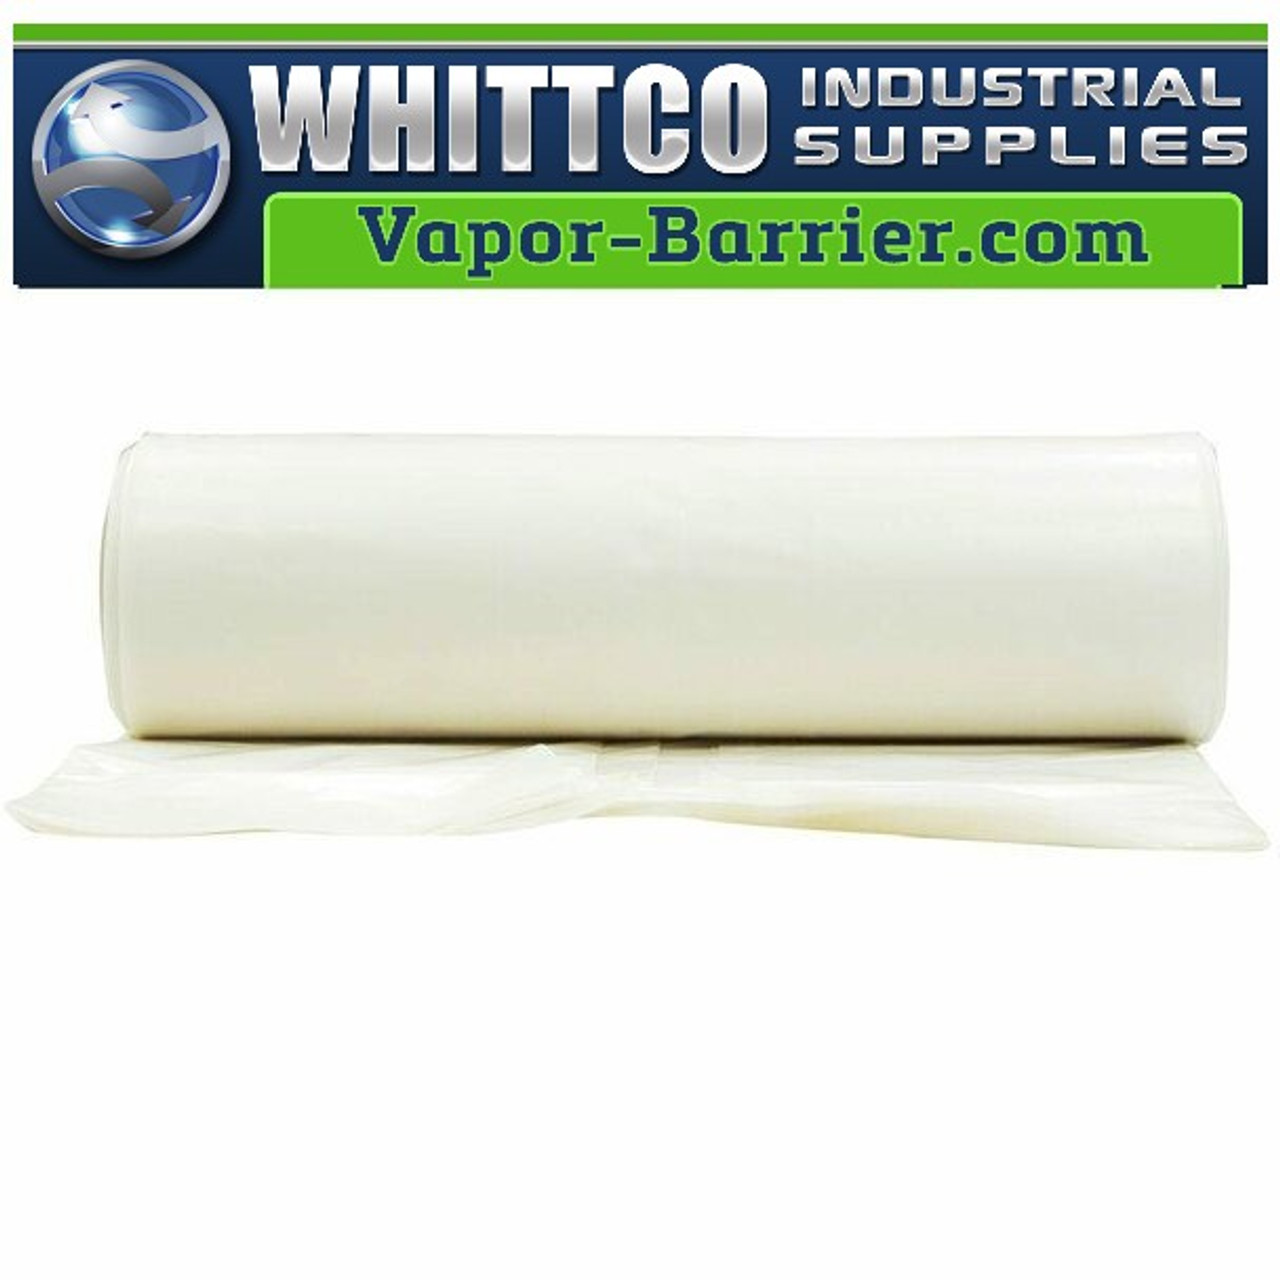 White Plastic Sheeting Vapor Barrier  56864.1670105214 ?c=2